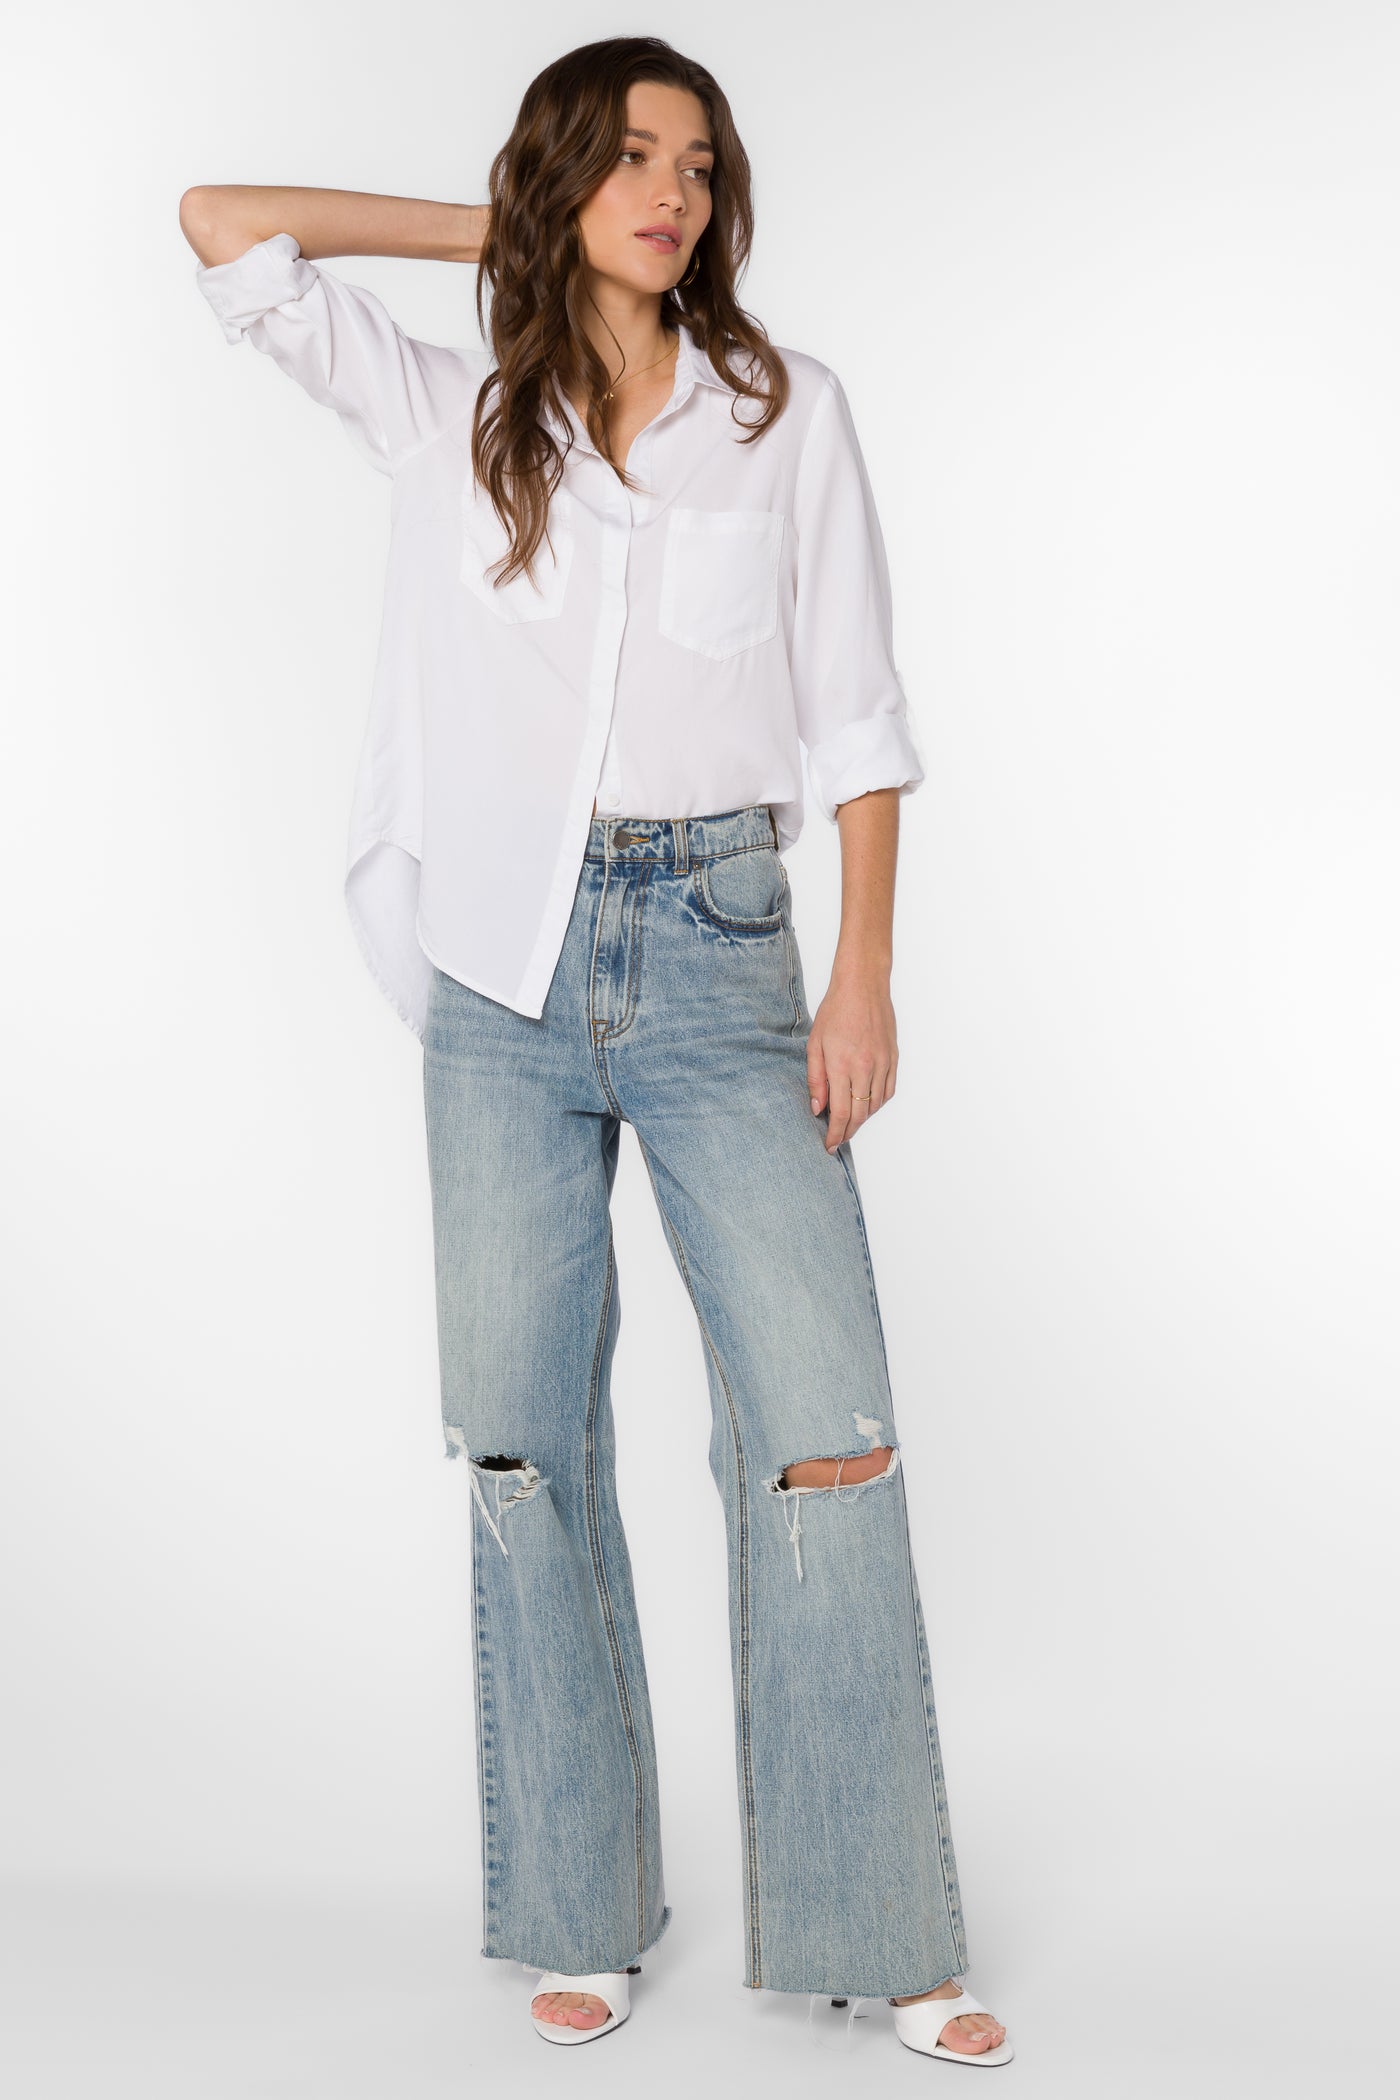 Riley Optic White Shirt - Tops - Velvet Heart Clothing